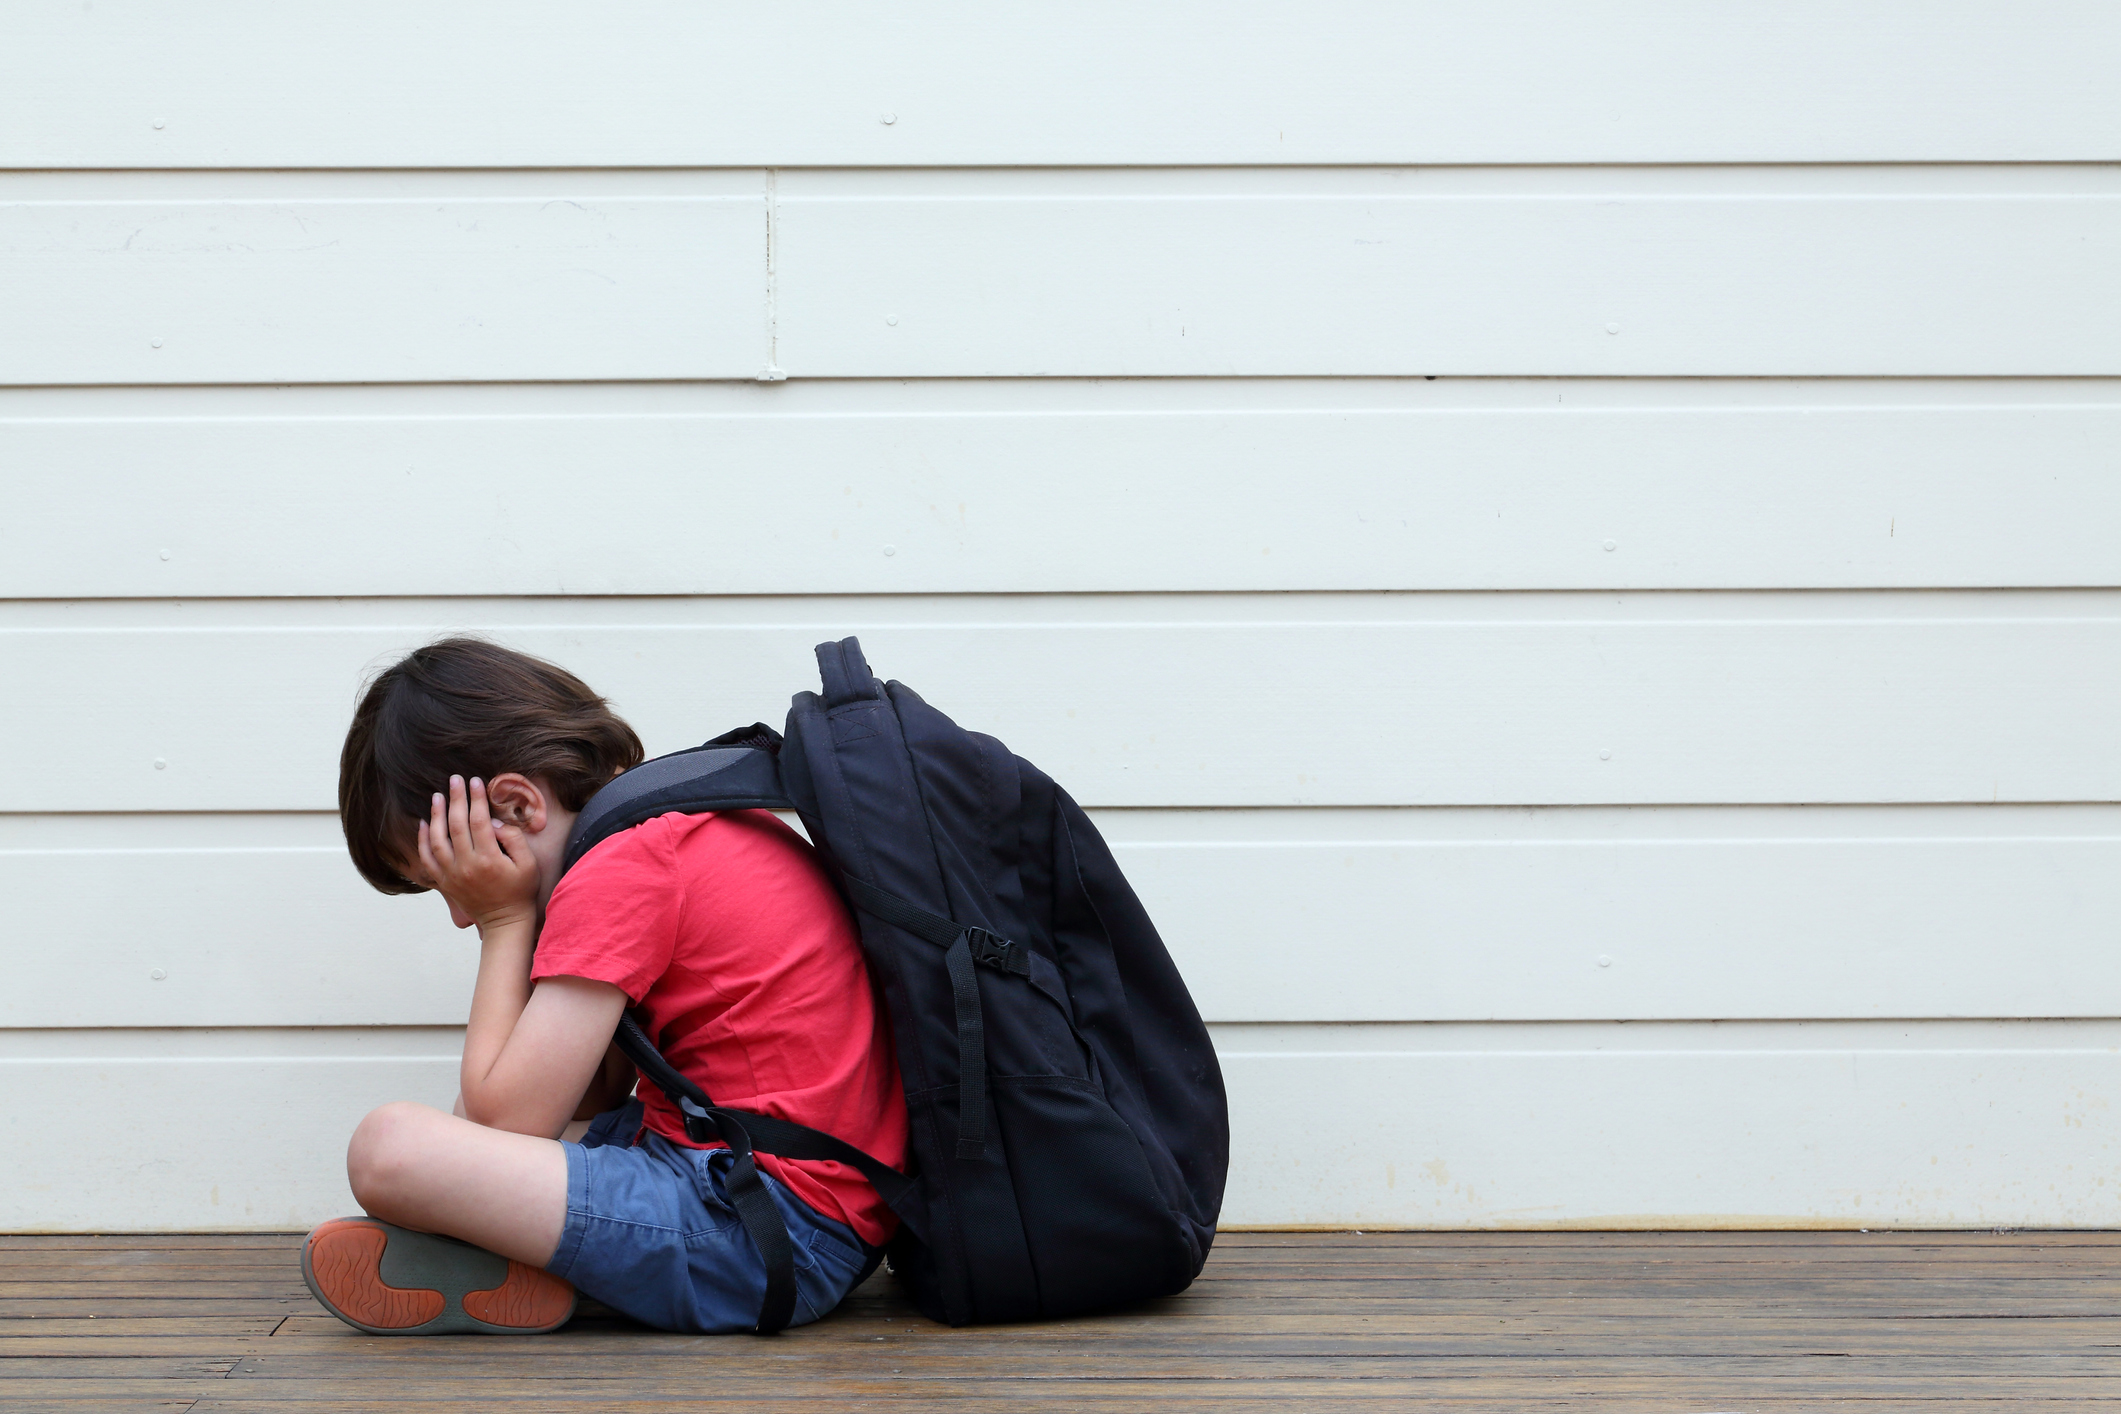 Como lidar com o bullying na escola? - Colégio Innovativo